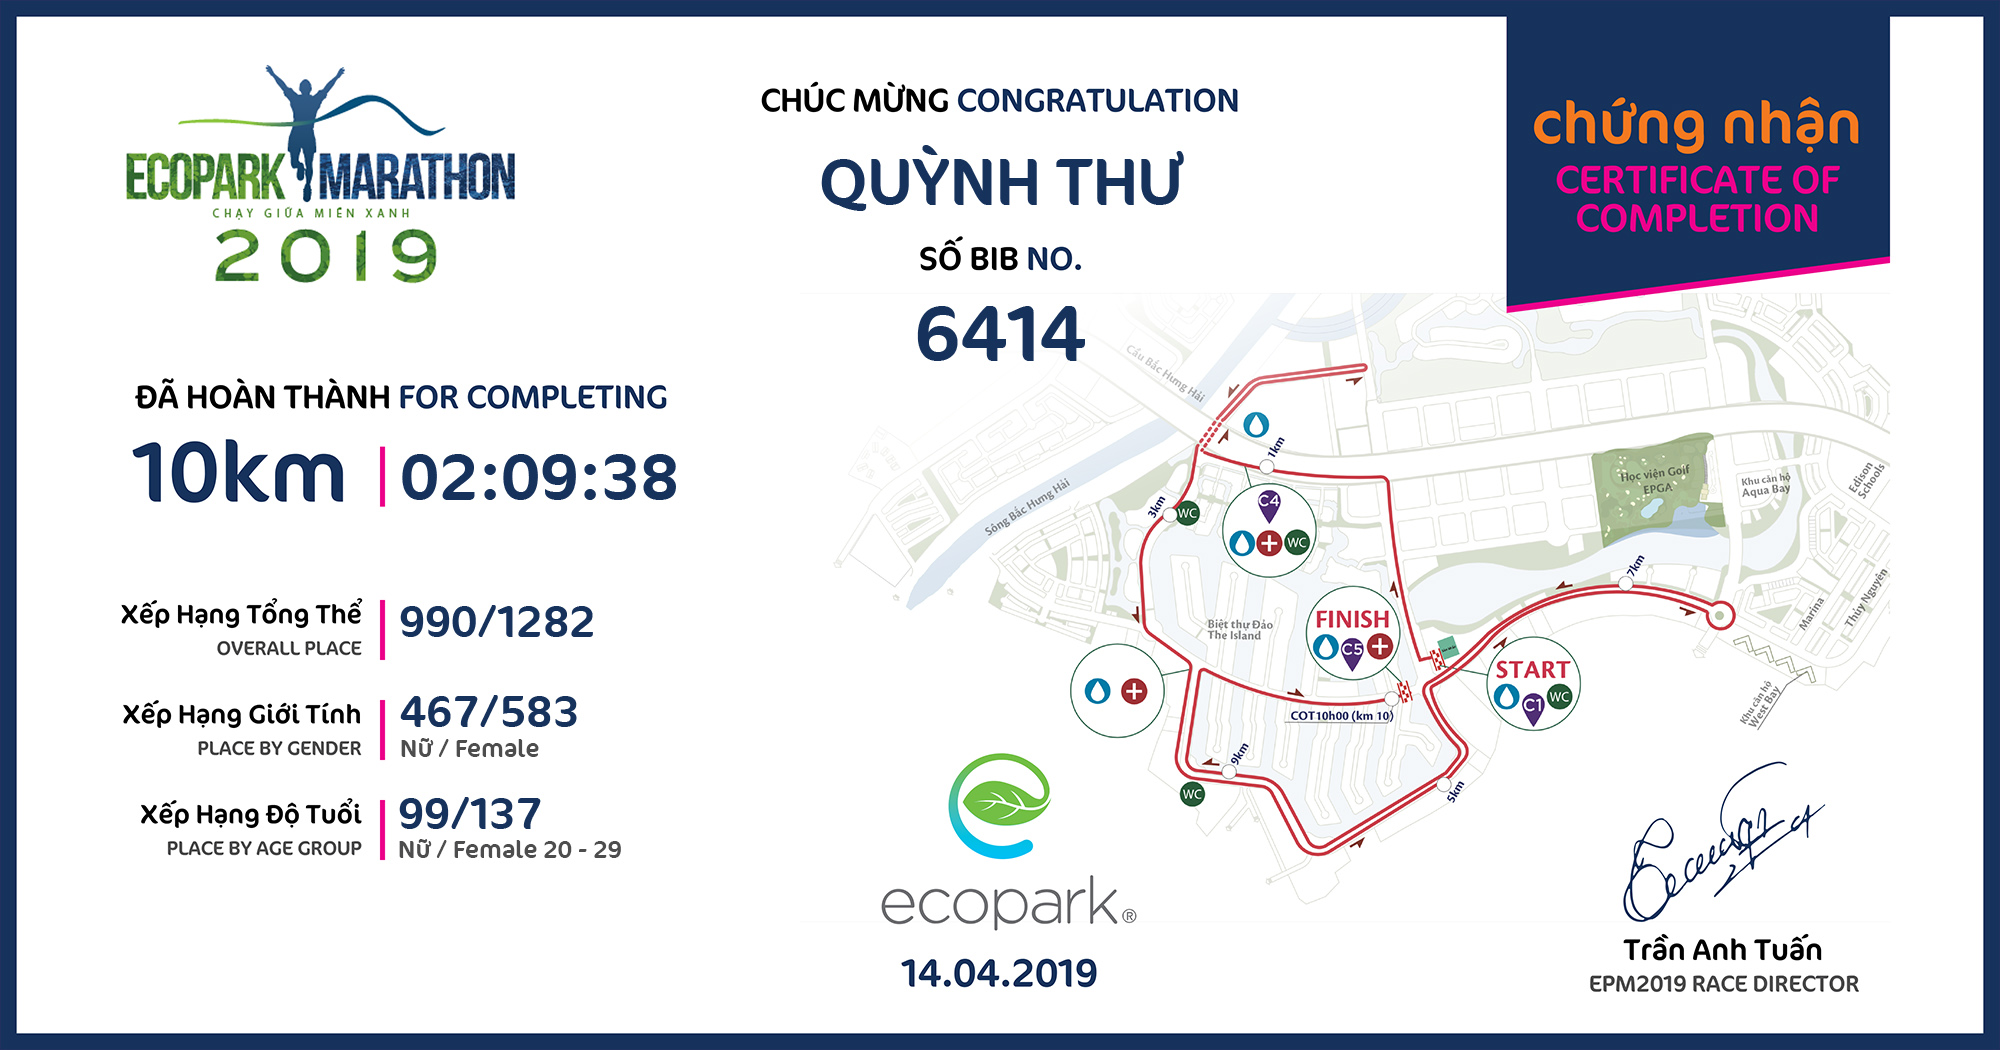 6414 - Quỳnh Thư